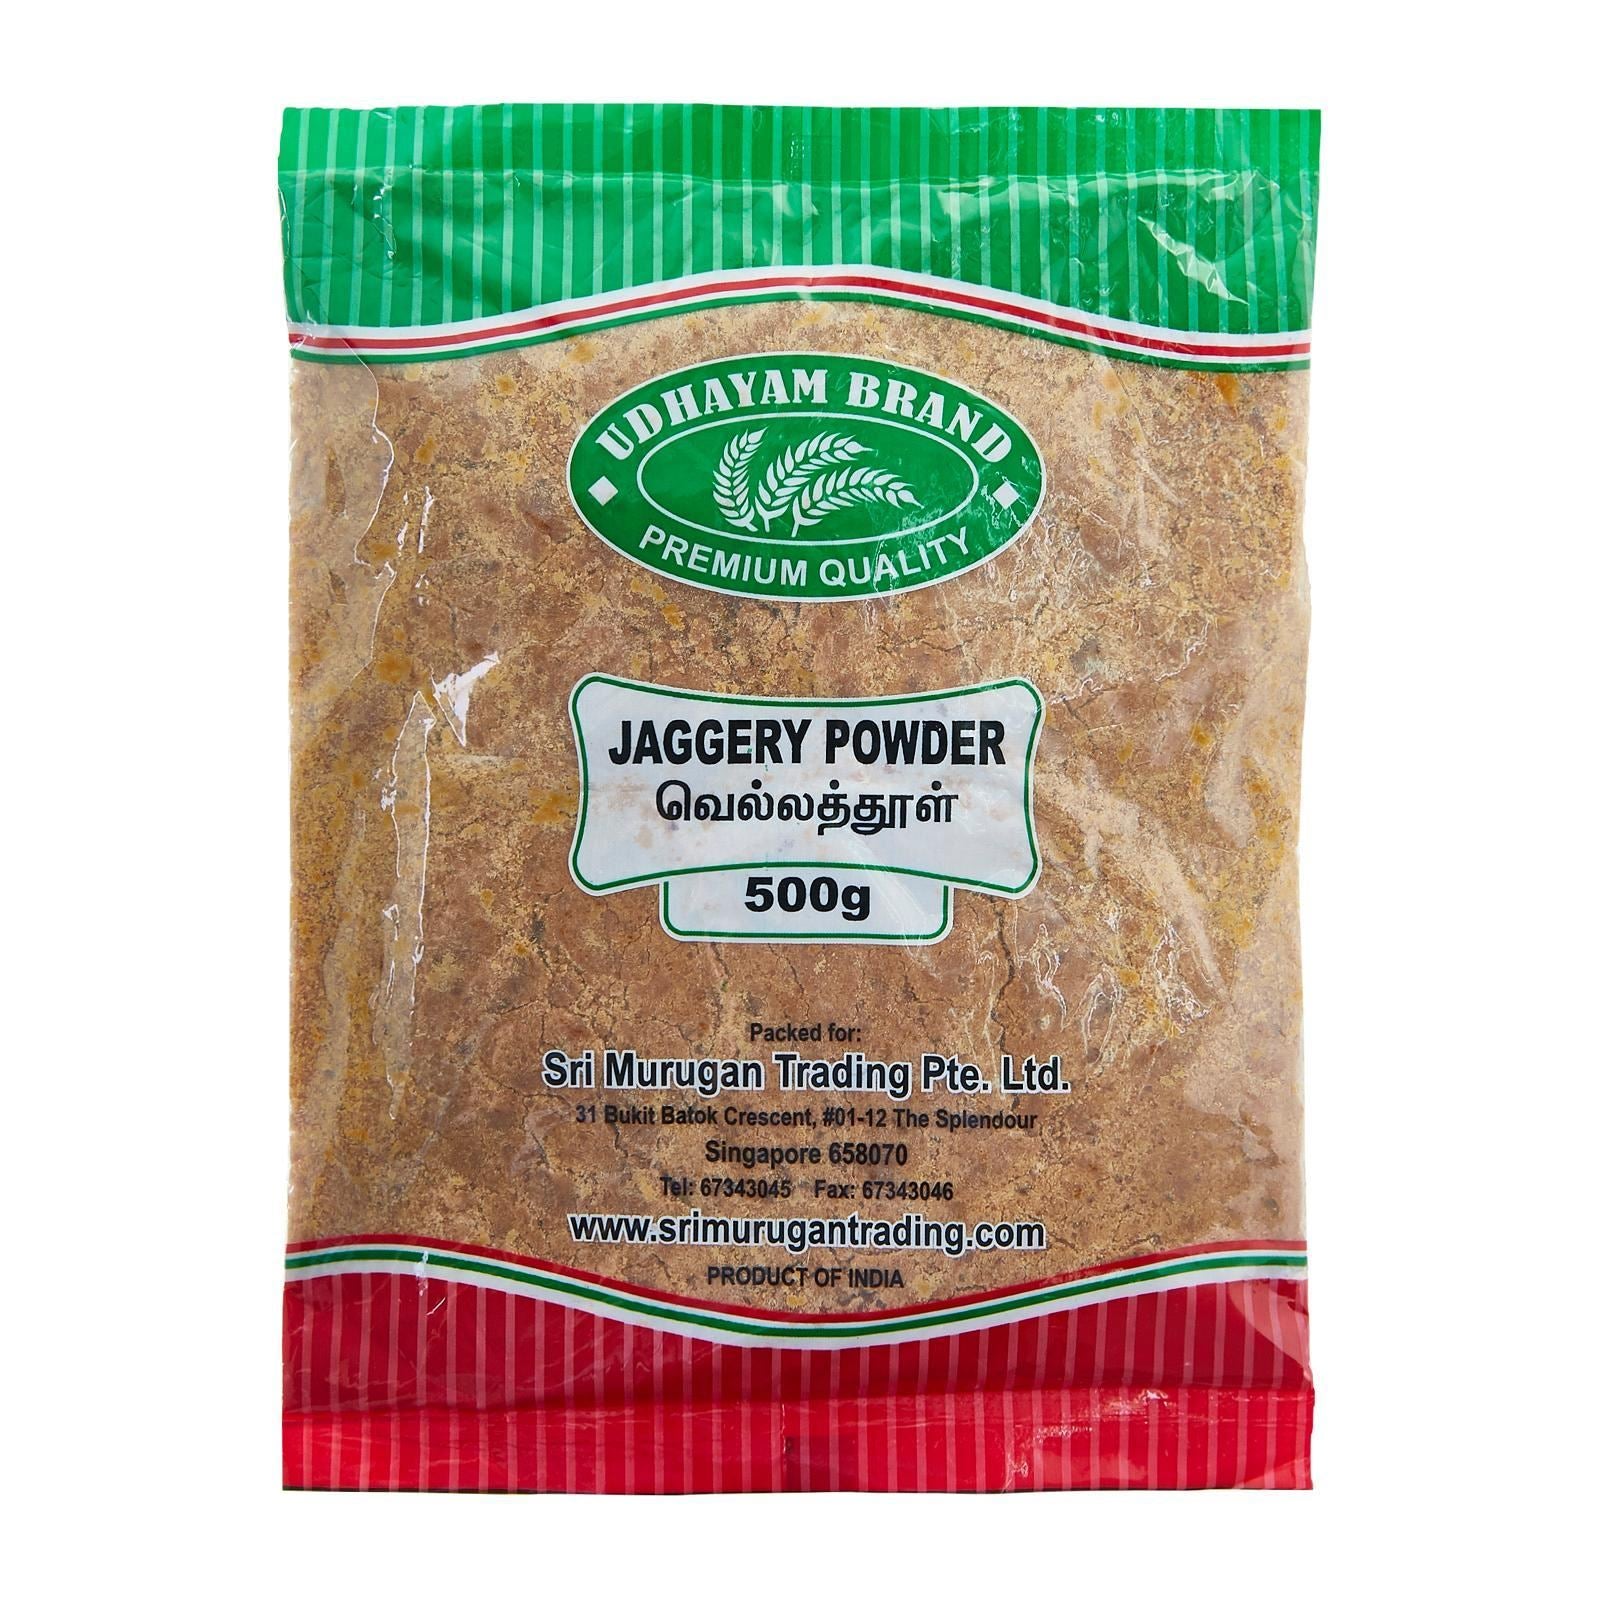 Sri Murugan Jaggery Powder